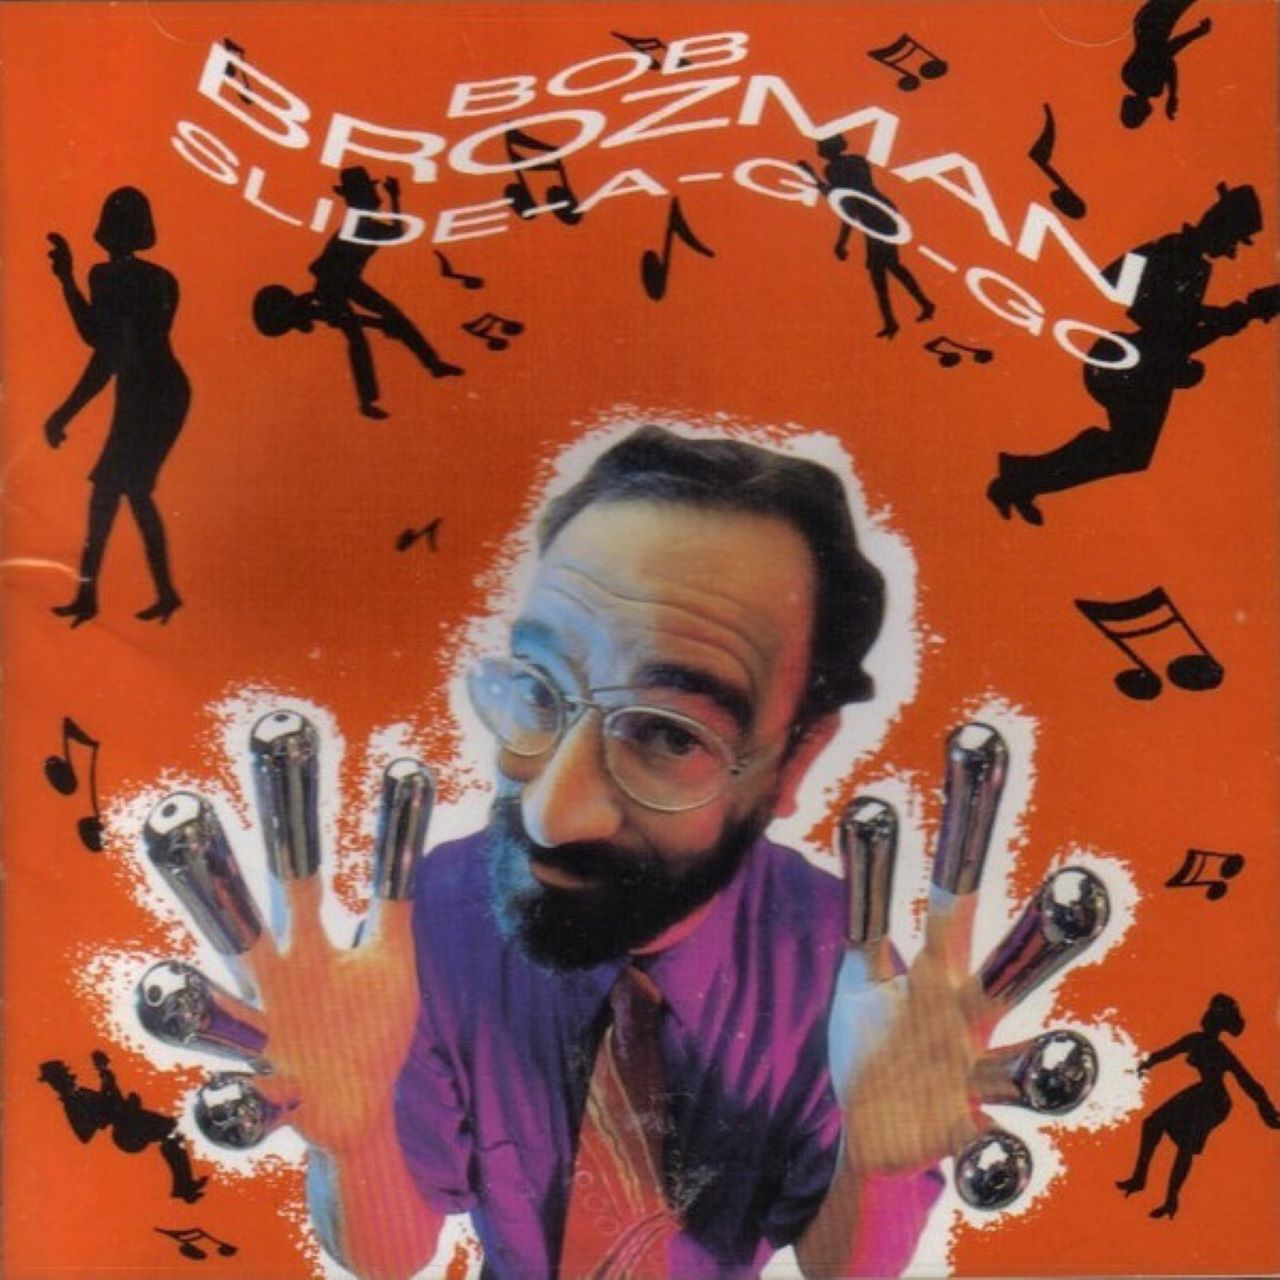 Bob Brozman - Slide A Go-go cover album